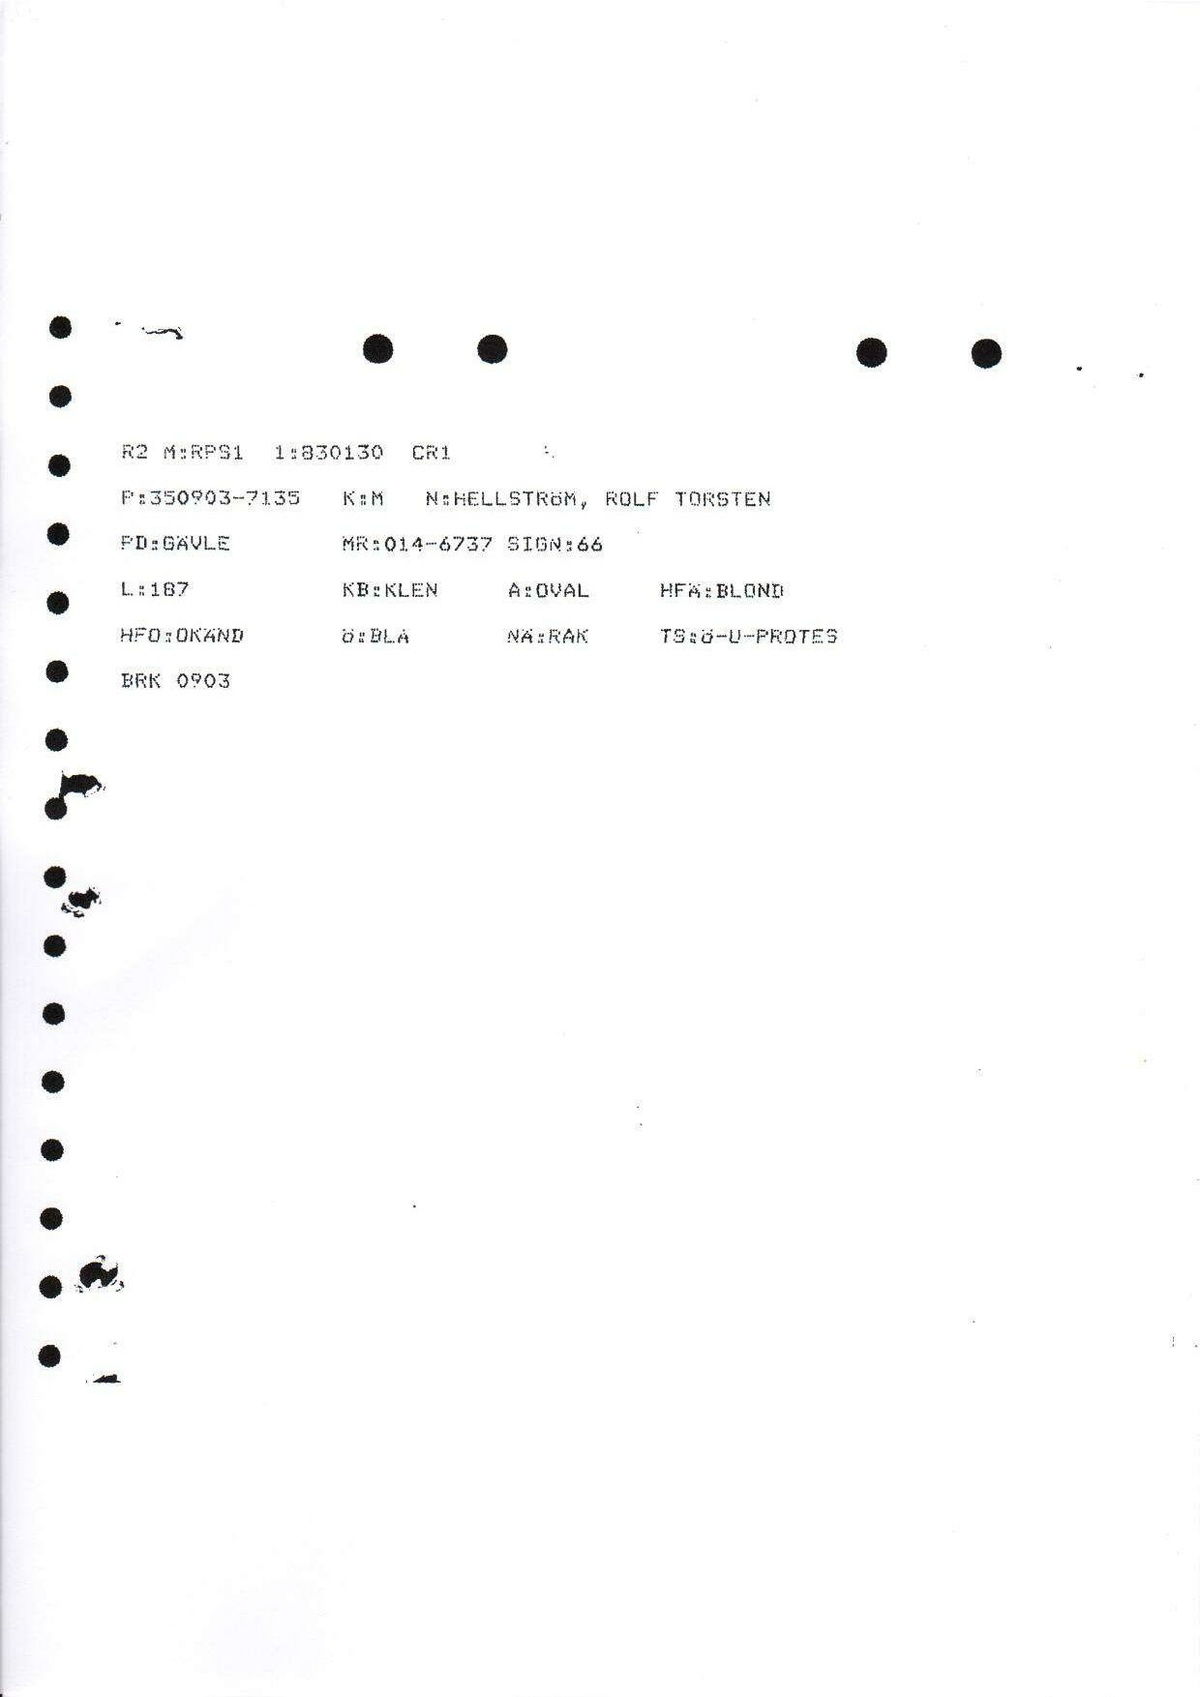 Pol-1986-03-21 2000 D2531-00 Erkännanden Palmemordet.pdf